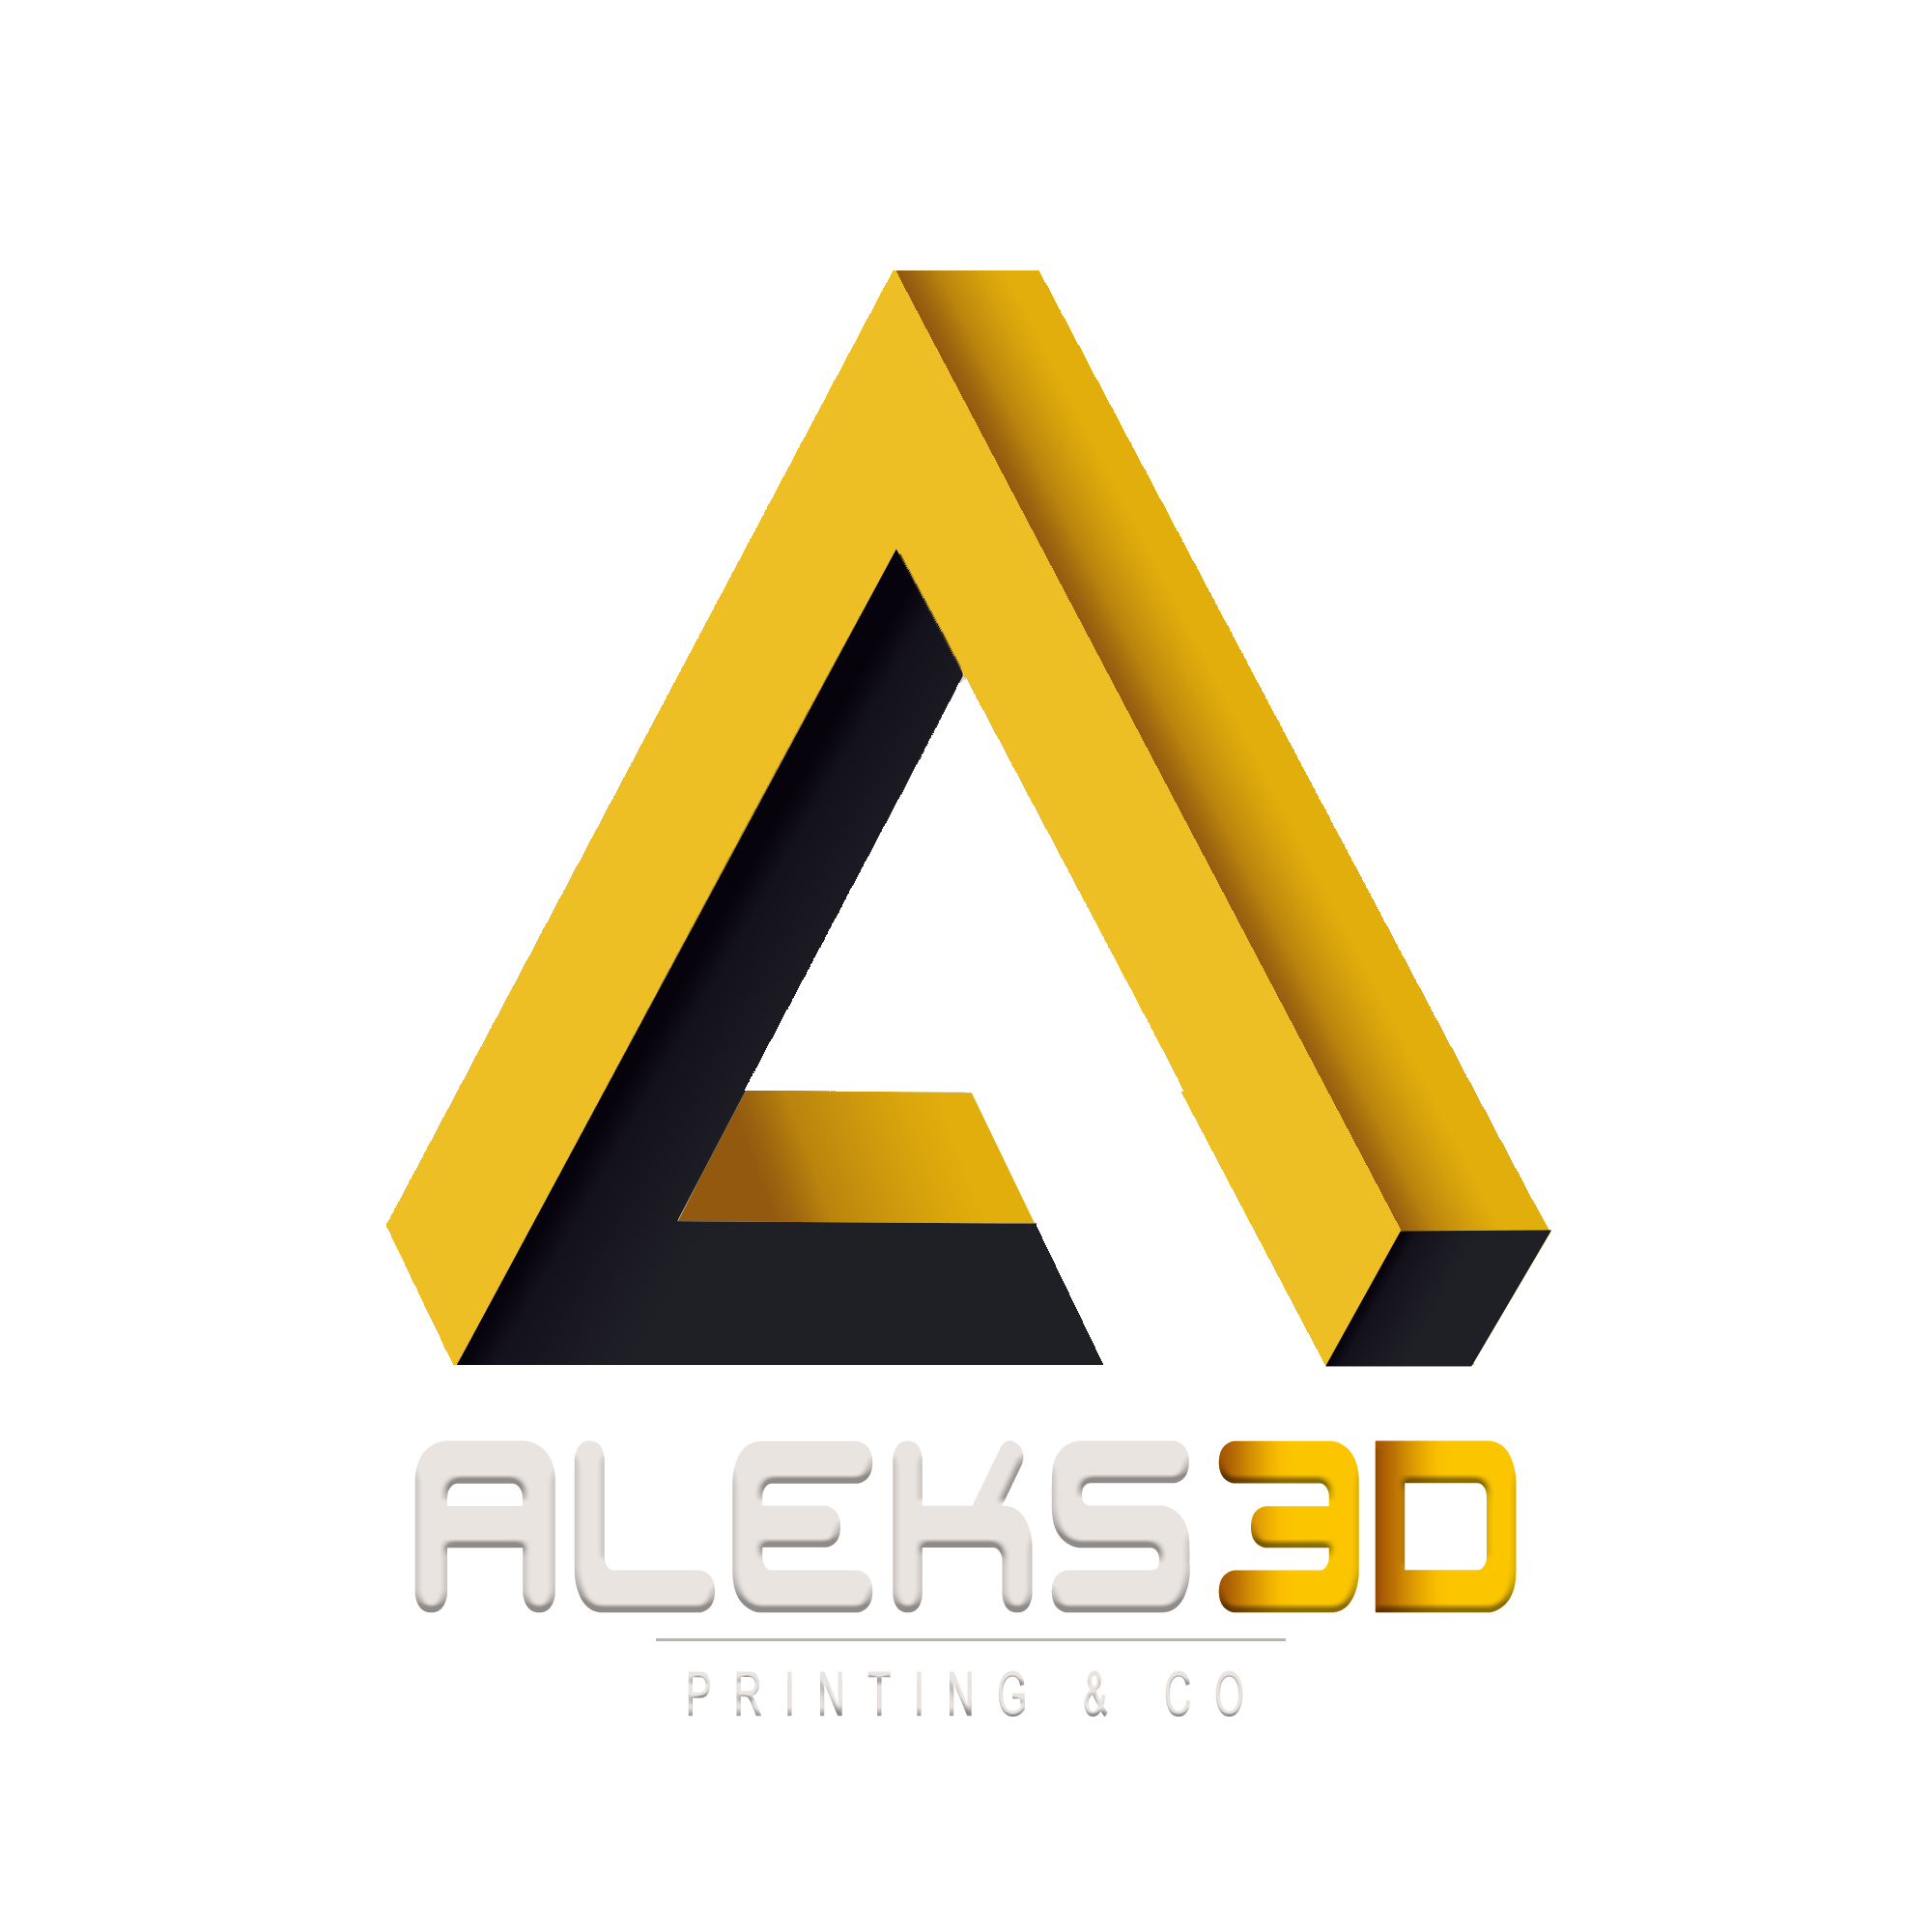 Aleks3D